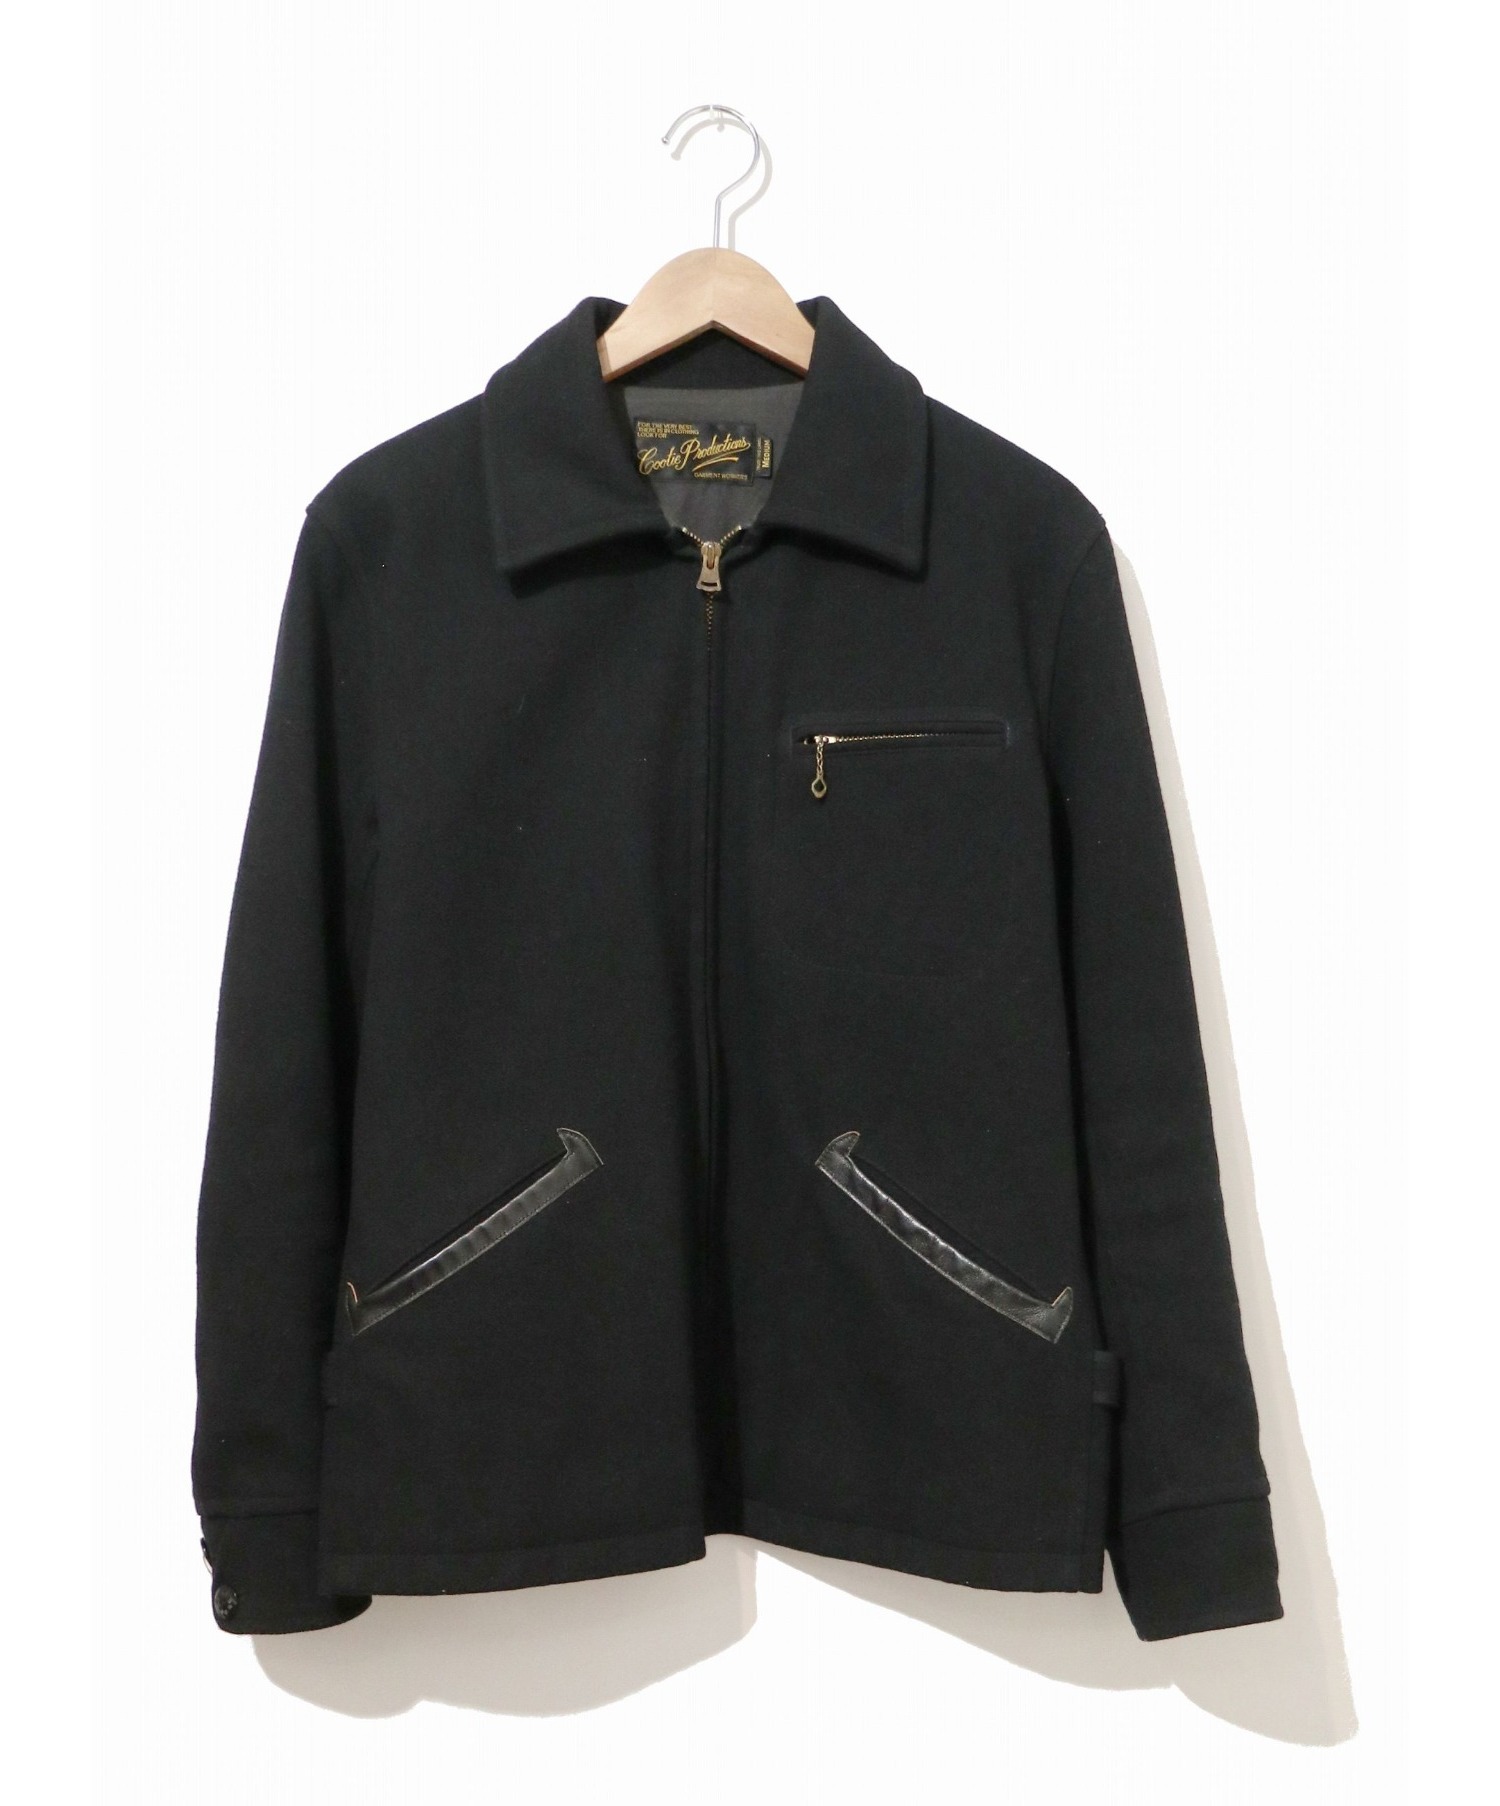 COOTIE (クーティ) ウールジャケット ブラック サイズ:MEDIUM ブランド定番アイテム